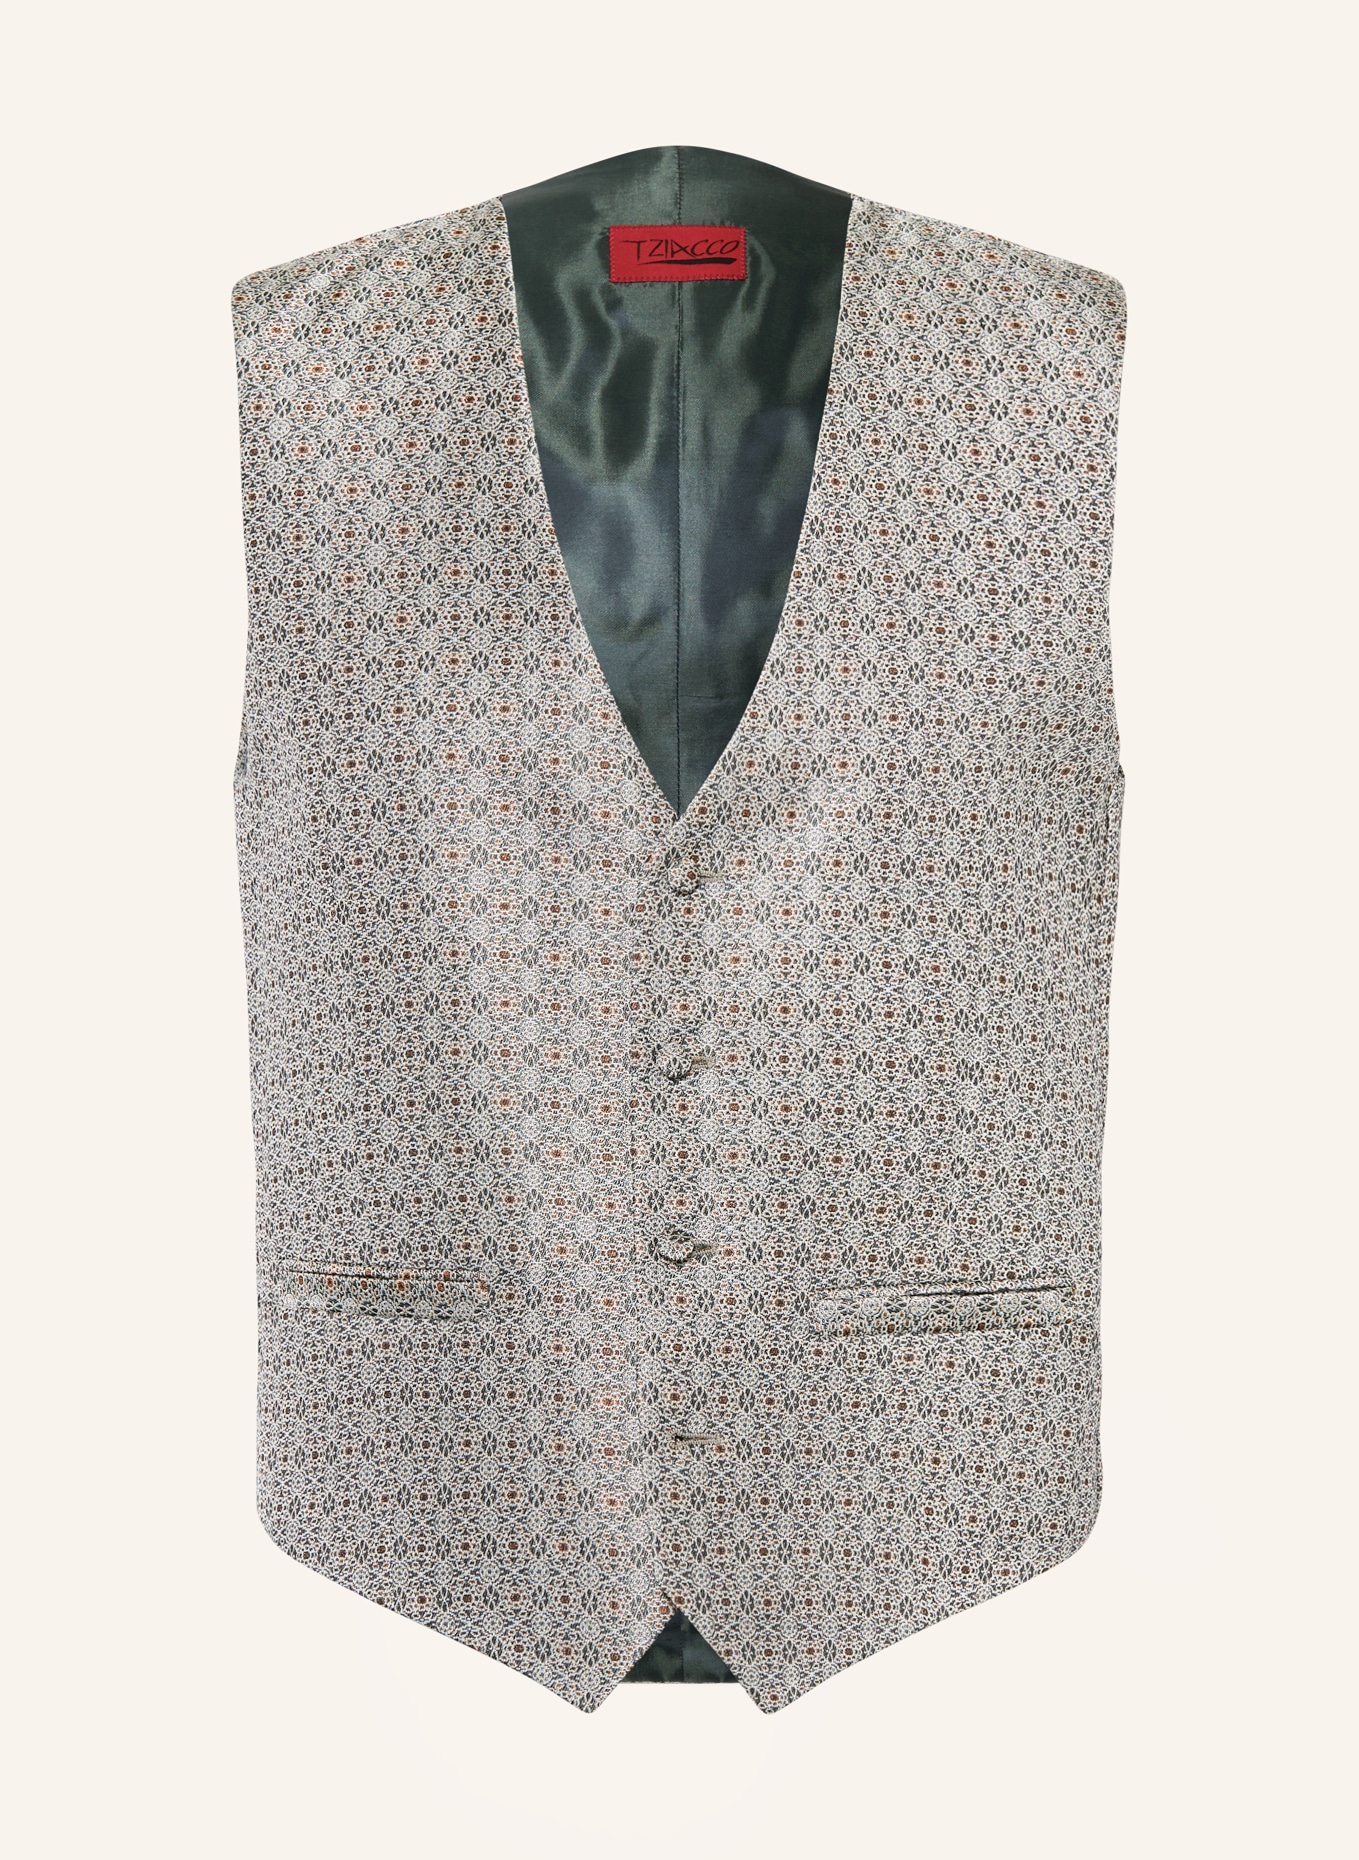 WILVORST Vest extra slim fit, Color: 045 grün (Image 1)